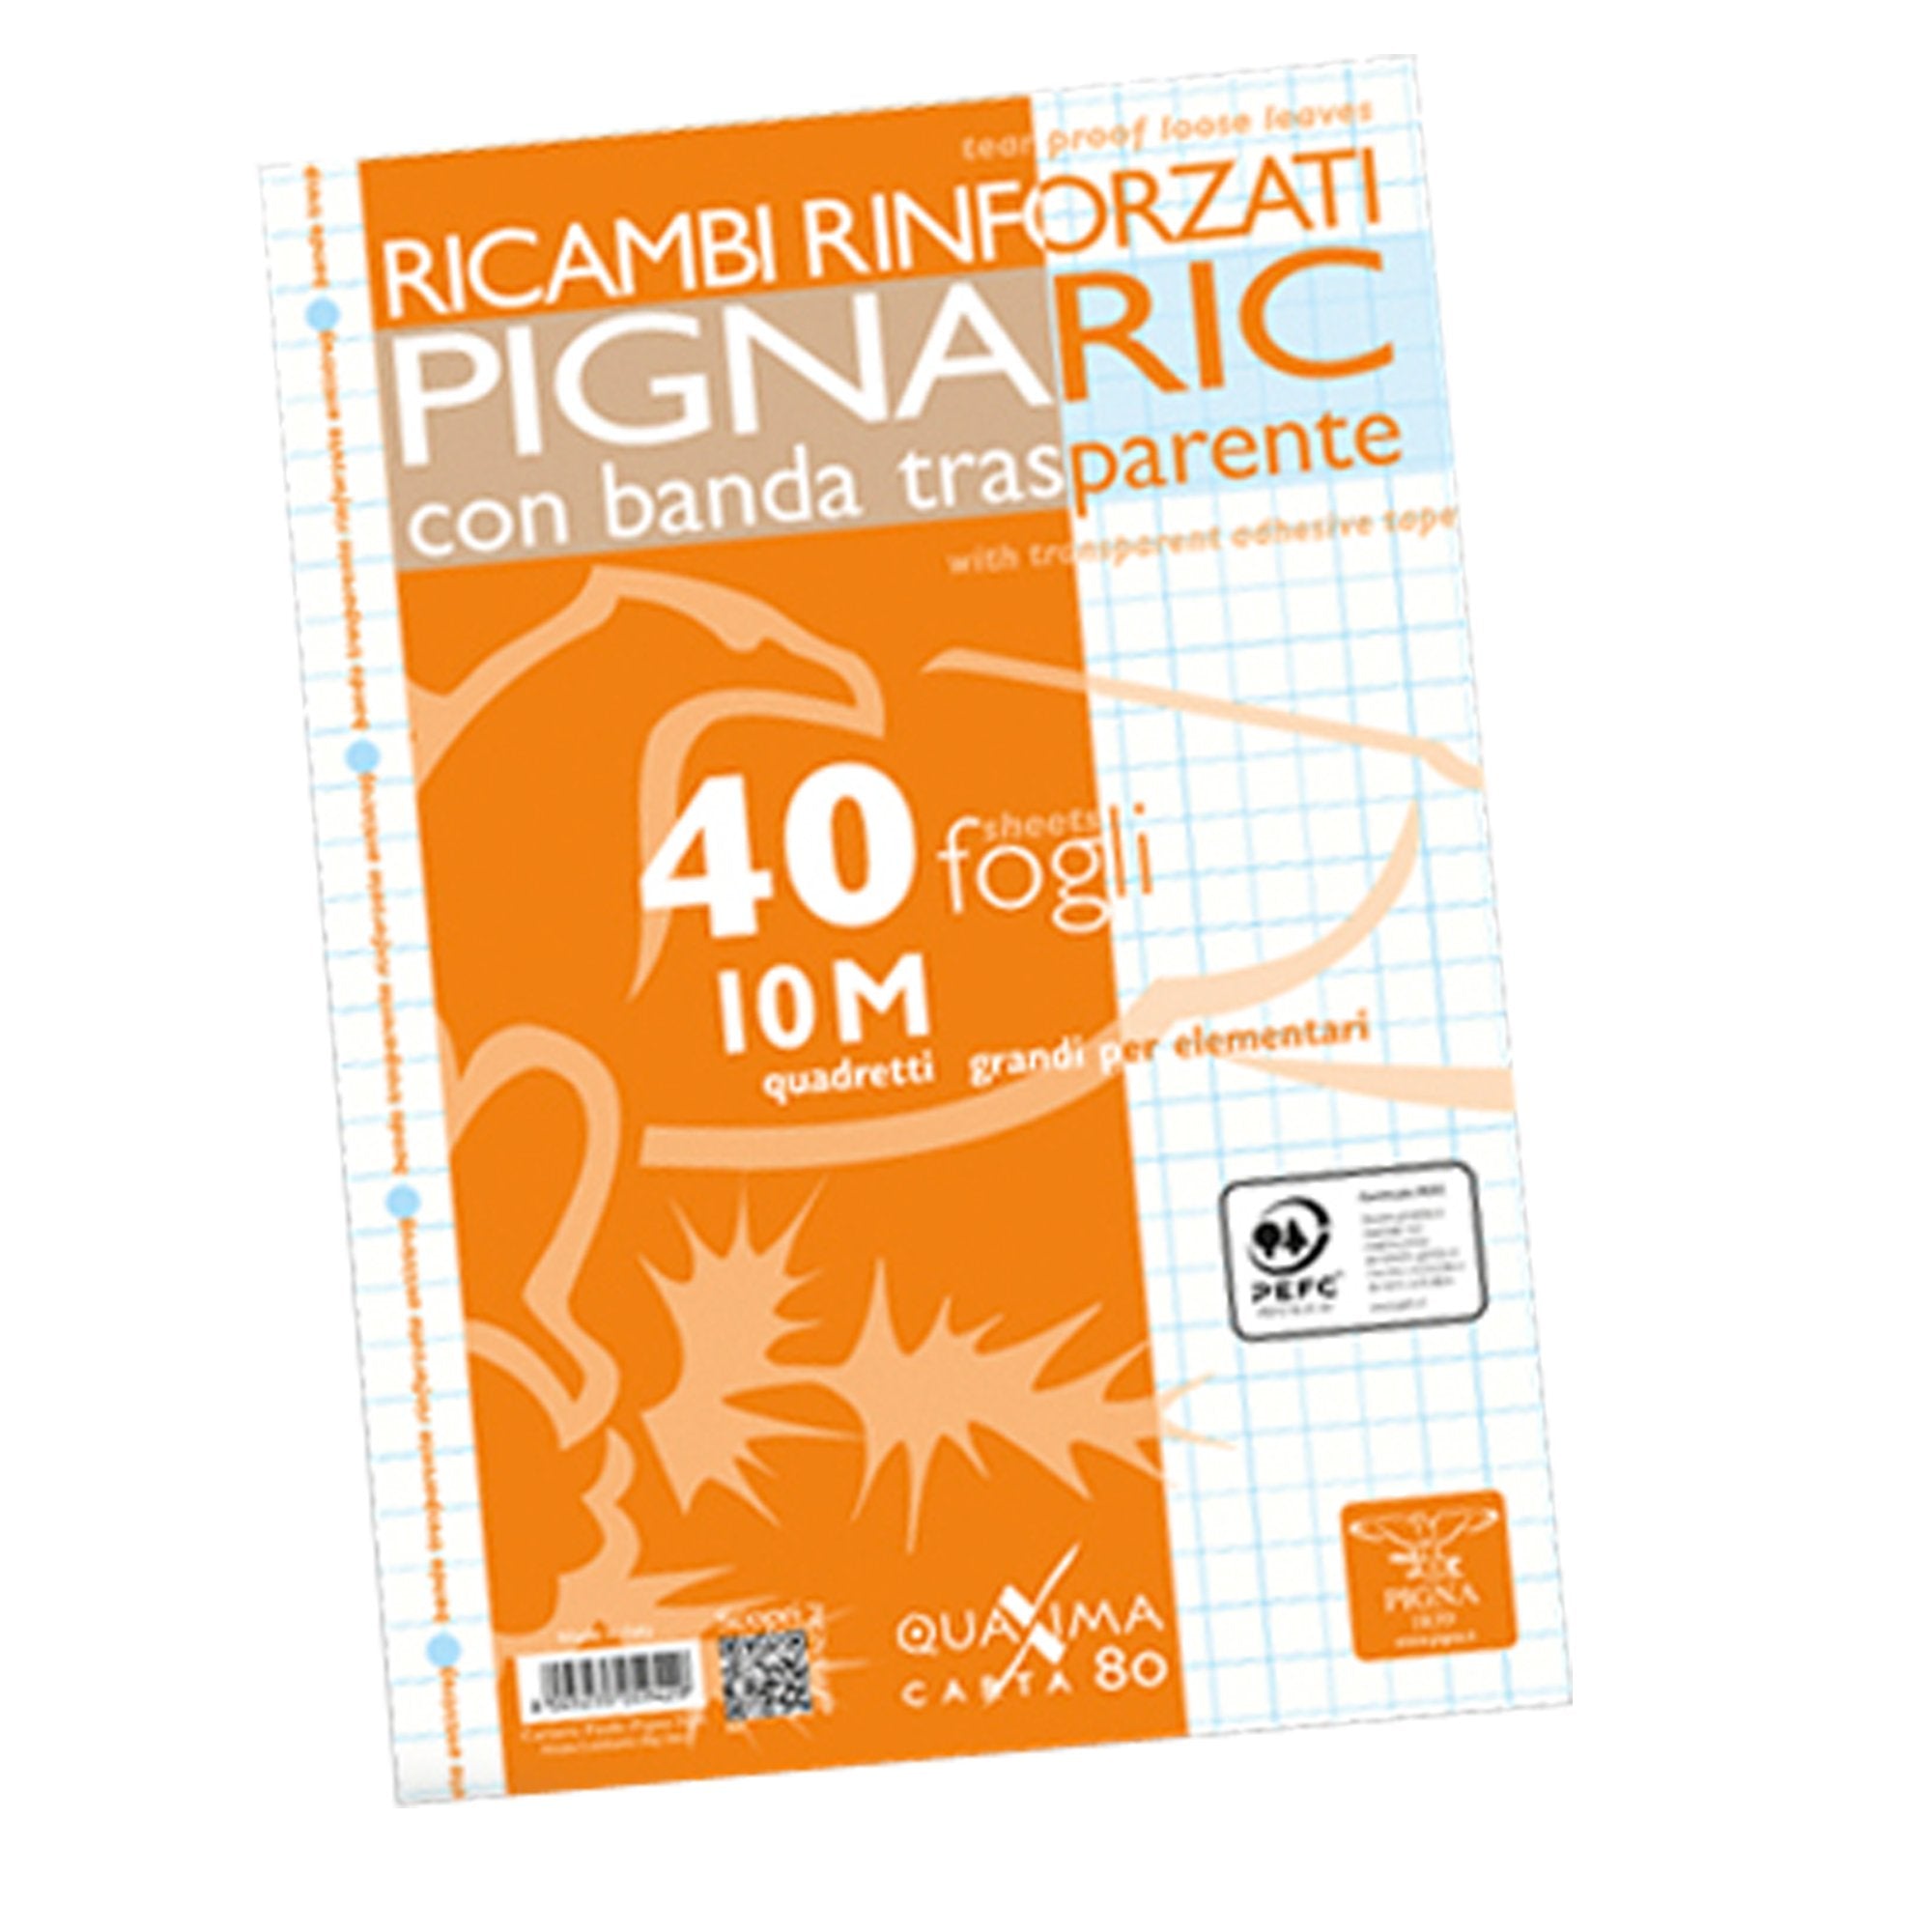 pigna-ricambi-forati-rinforzati-a4-10mm-40fg-80gr-ric